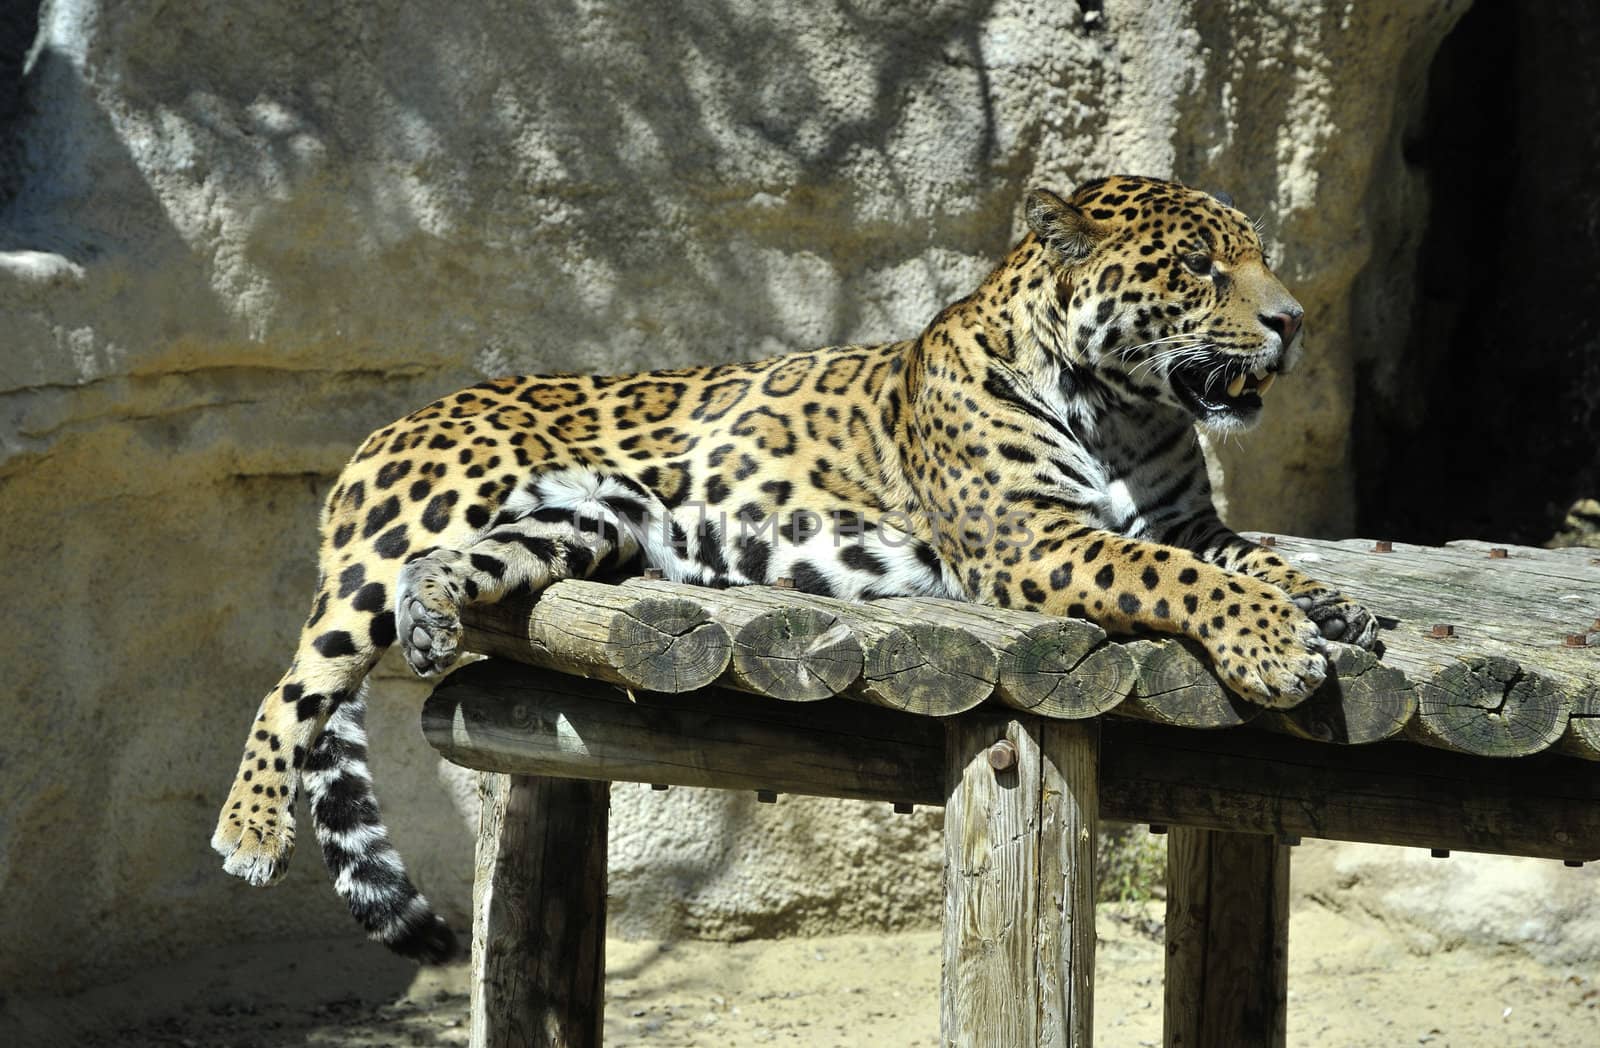 Leopard in a Zoo